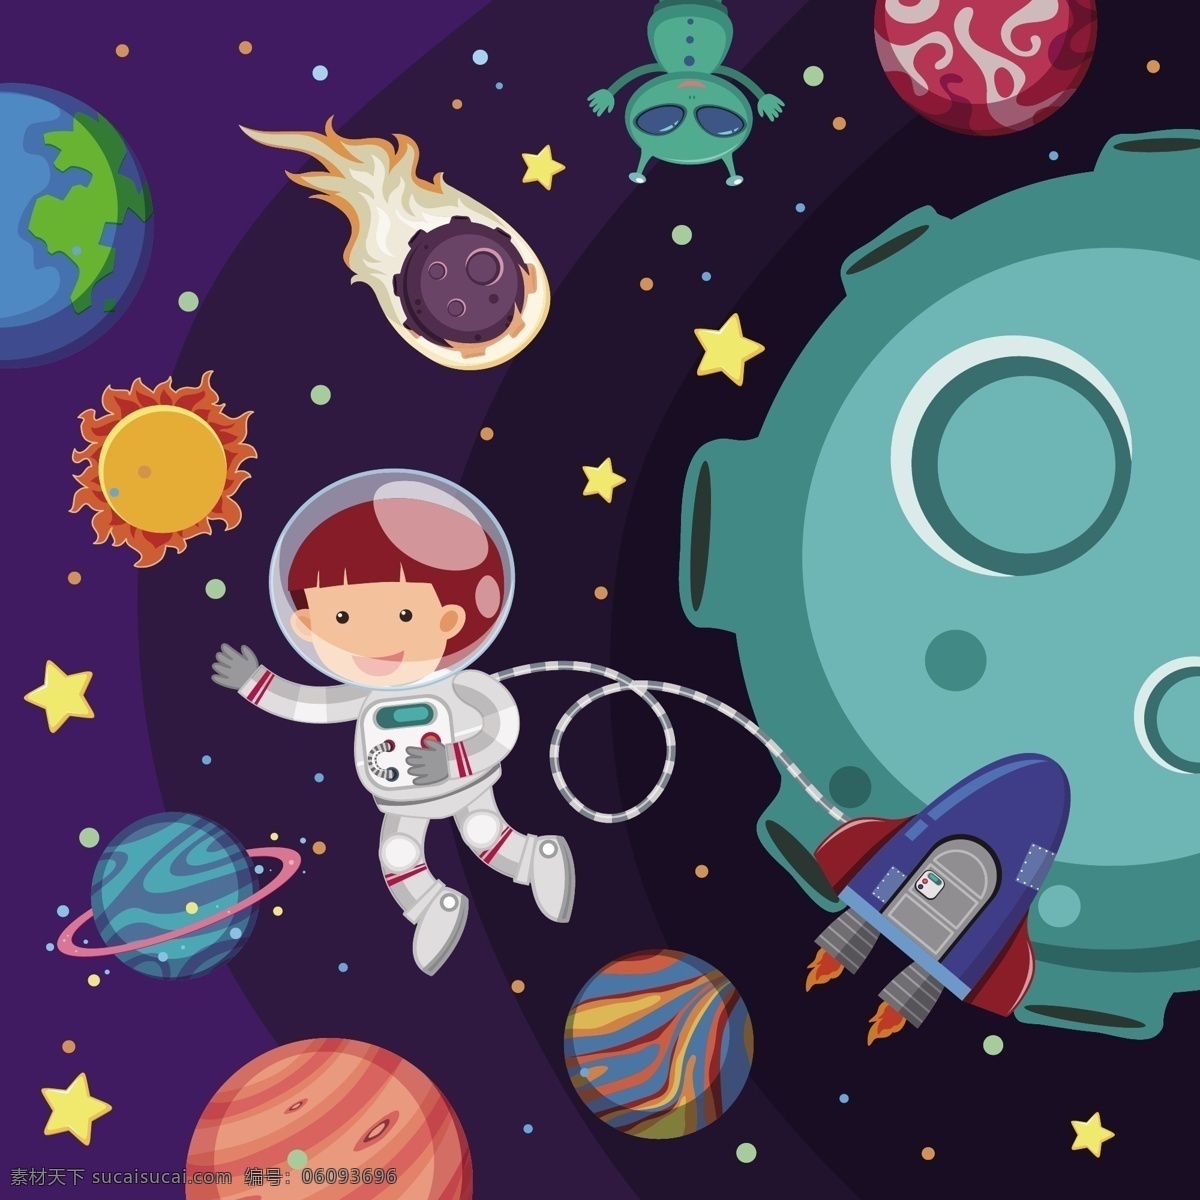 宇宙 外 太空 创意 插画 卡通 可爱 儿童 人物 宇航员 墙绘 海报 生日卡片 背景矢量 星球 球体 外太空 宇宙飞船 星星 夜空 动漫动画